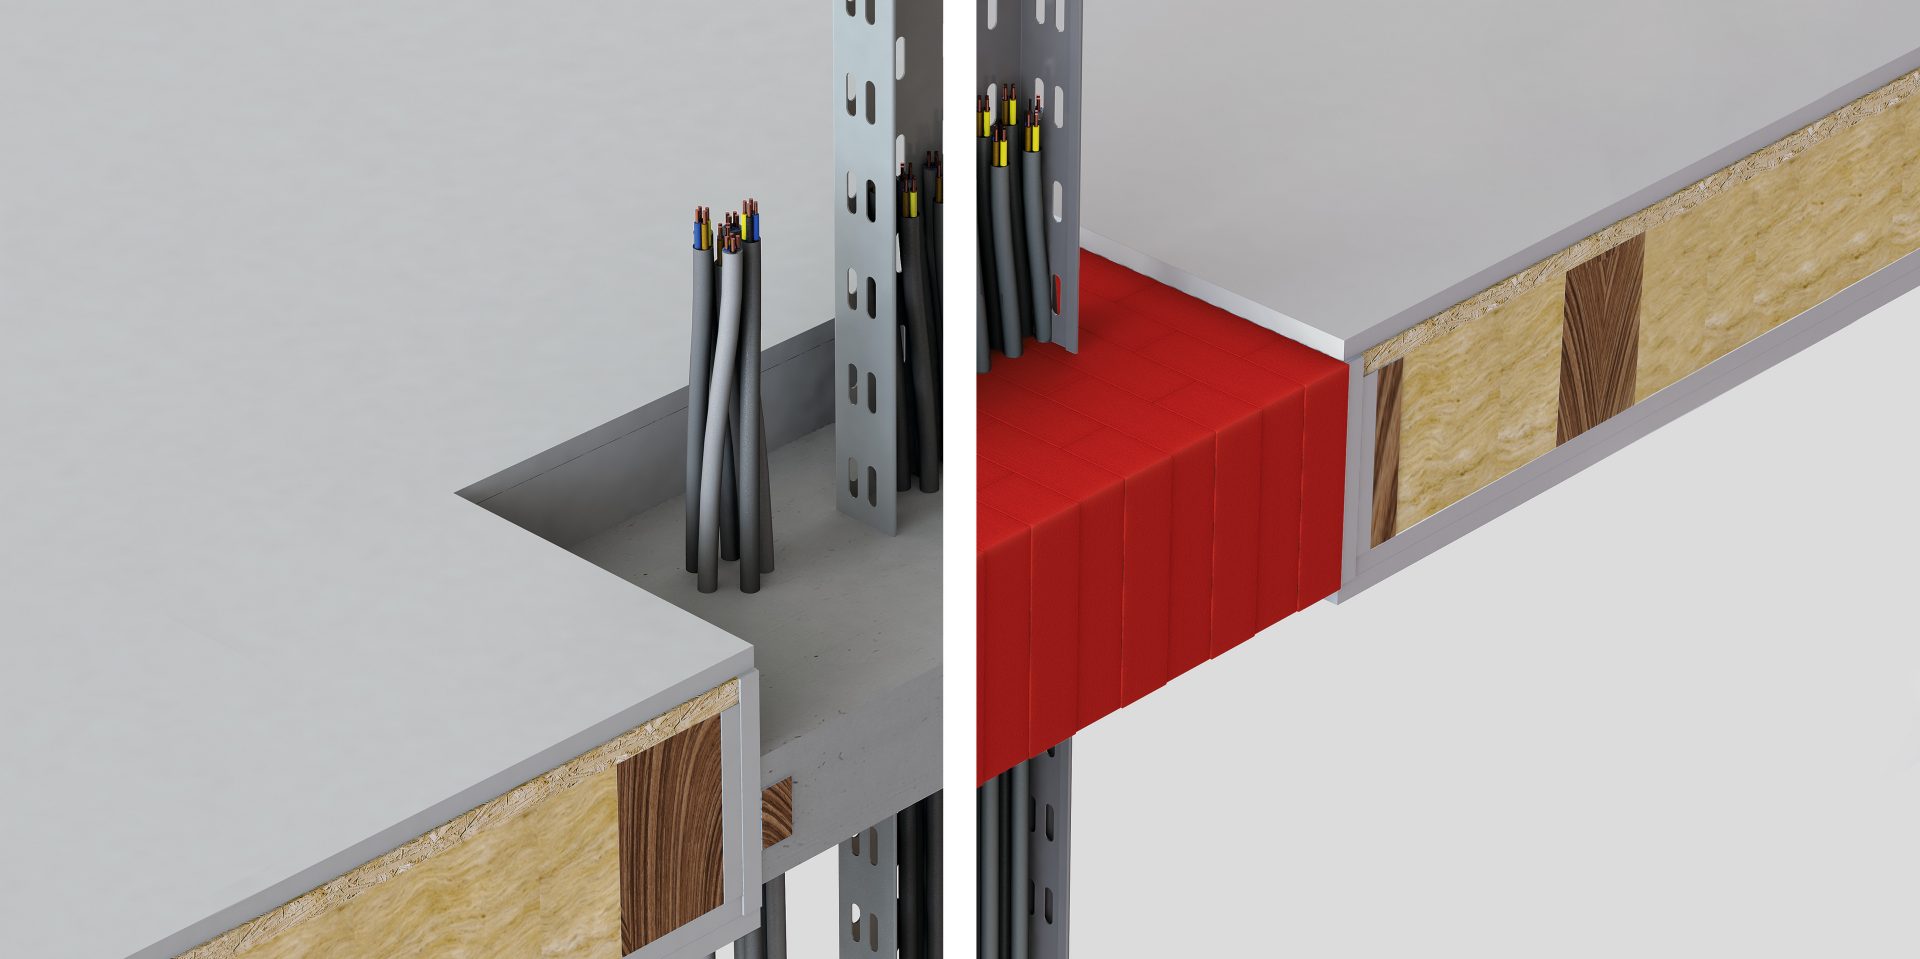 Comparaison d’une solution classique de résine (à gauche) et de briques sèches rouges coupe-feu Hilti (à droite) pour un plancher en bois